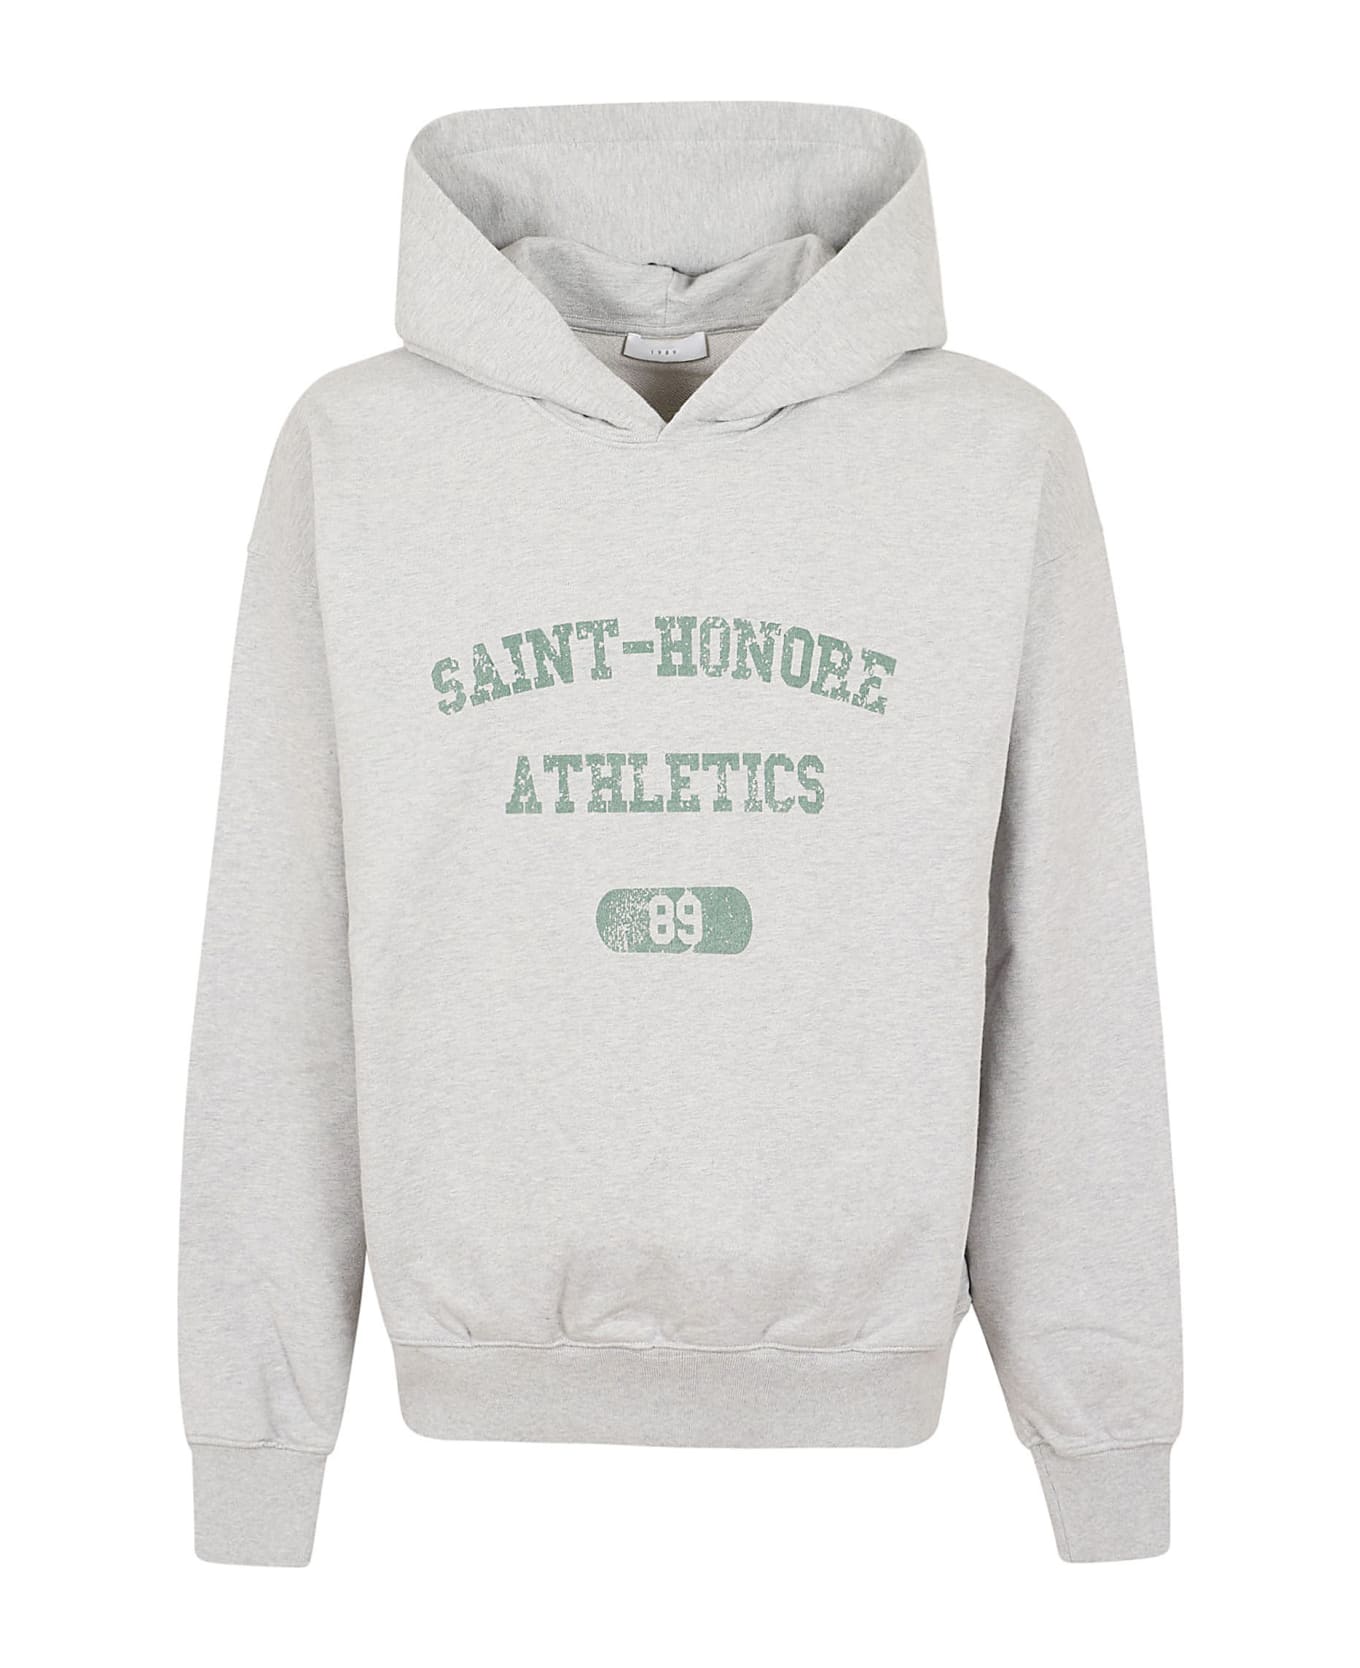 1989 Studio Saint Honore Athletics Distressed Hoodie - Heather Grey フリース